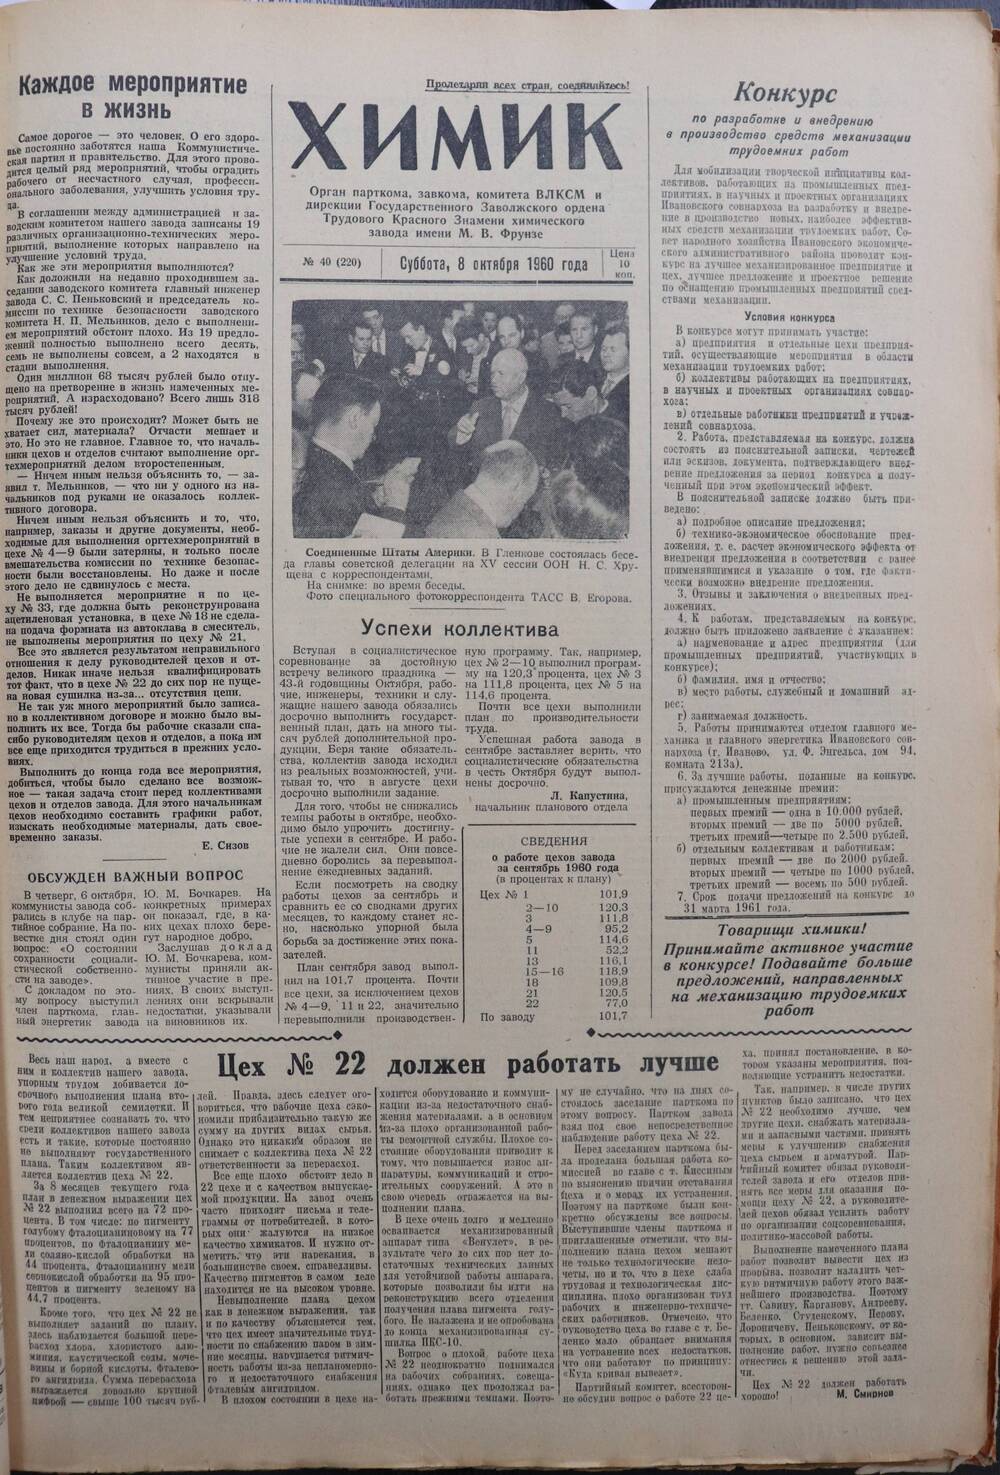 Газета «Химик» № 40 от 8 октября 1960 года.